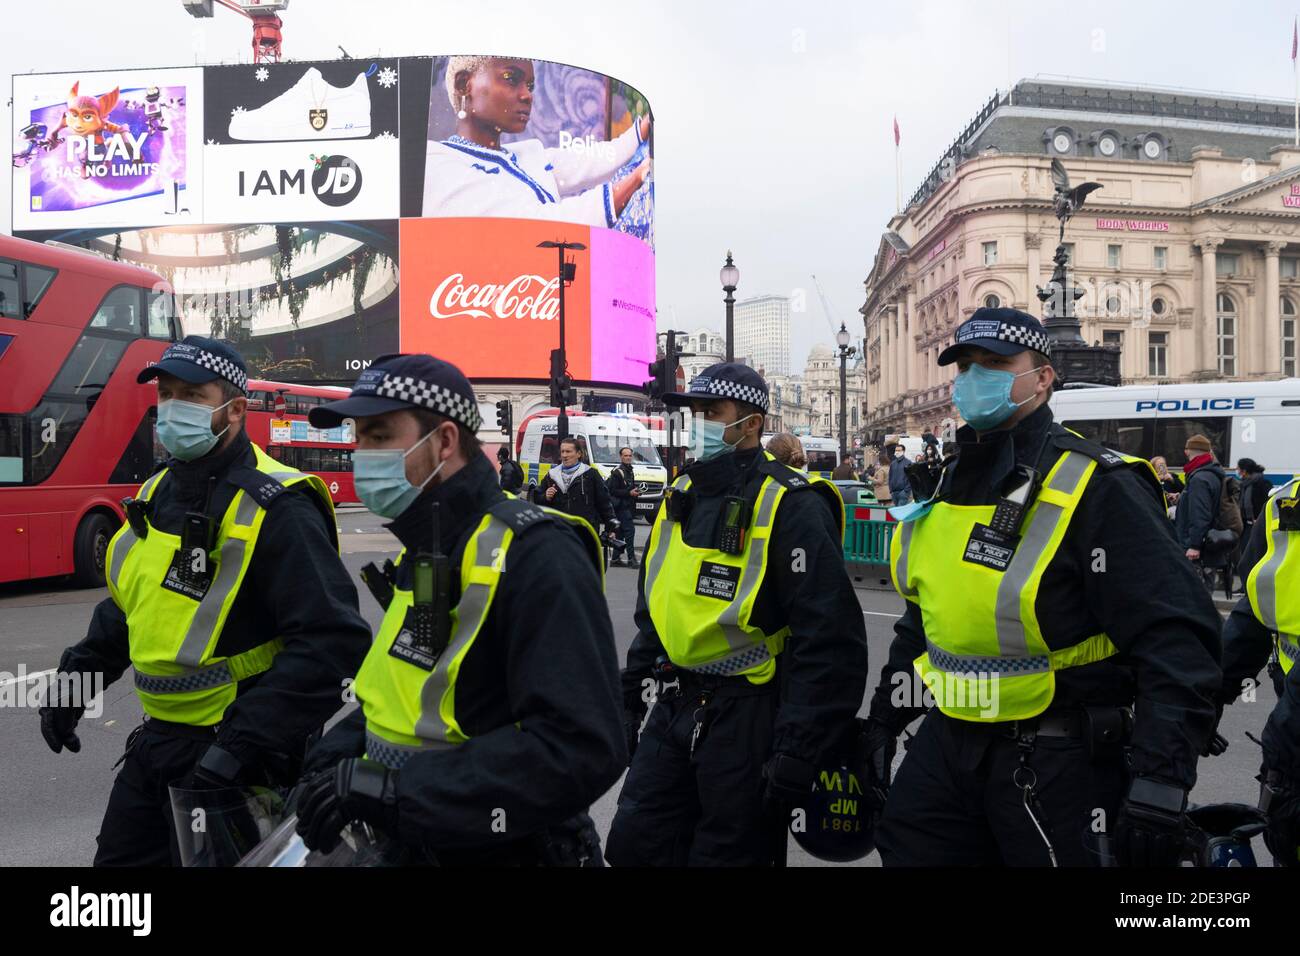 Londres, Grande-Bretagne. 28 novembre 2020. Des policiers sont vus dans une rue lors d'une manifestation anti-verrouillage à Londres, en Grande-Bretagne, le 28 novembre 2020. Plus de 60 personnes ont été arrêtées samedi, alors que des manifestants anti-verrouillage se sont affrontés avec la police dans le centre de Londres, selon les médias locaux. Credit: Ray Tang/Xinhua/Alay Live News Banque D'Images